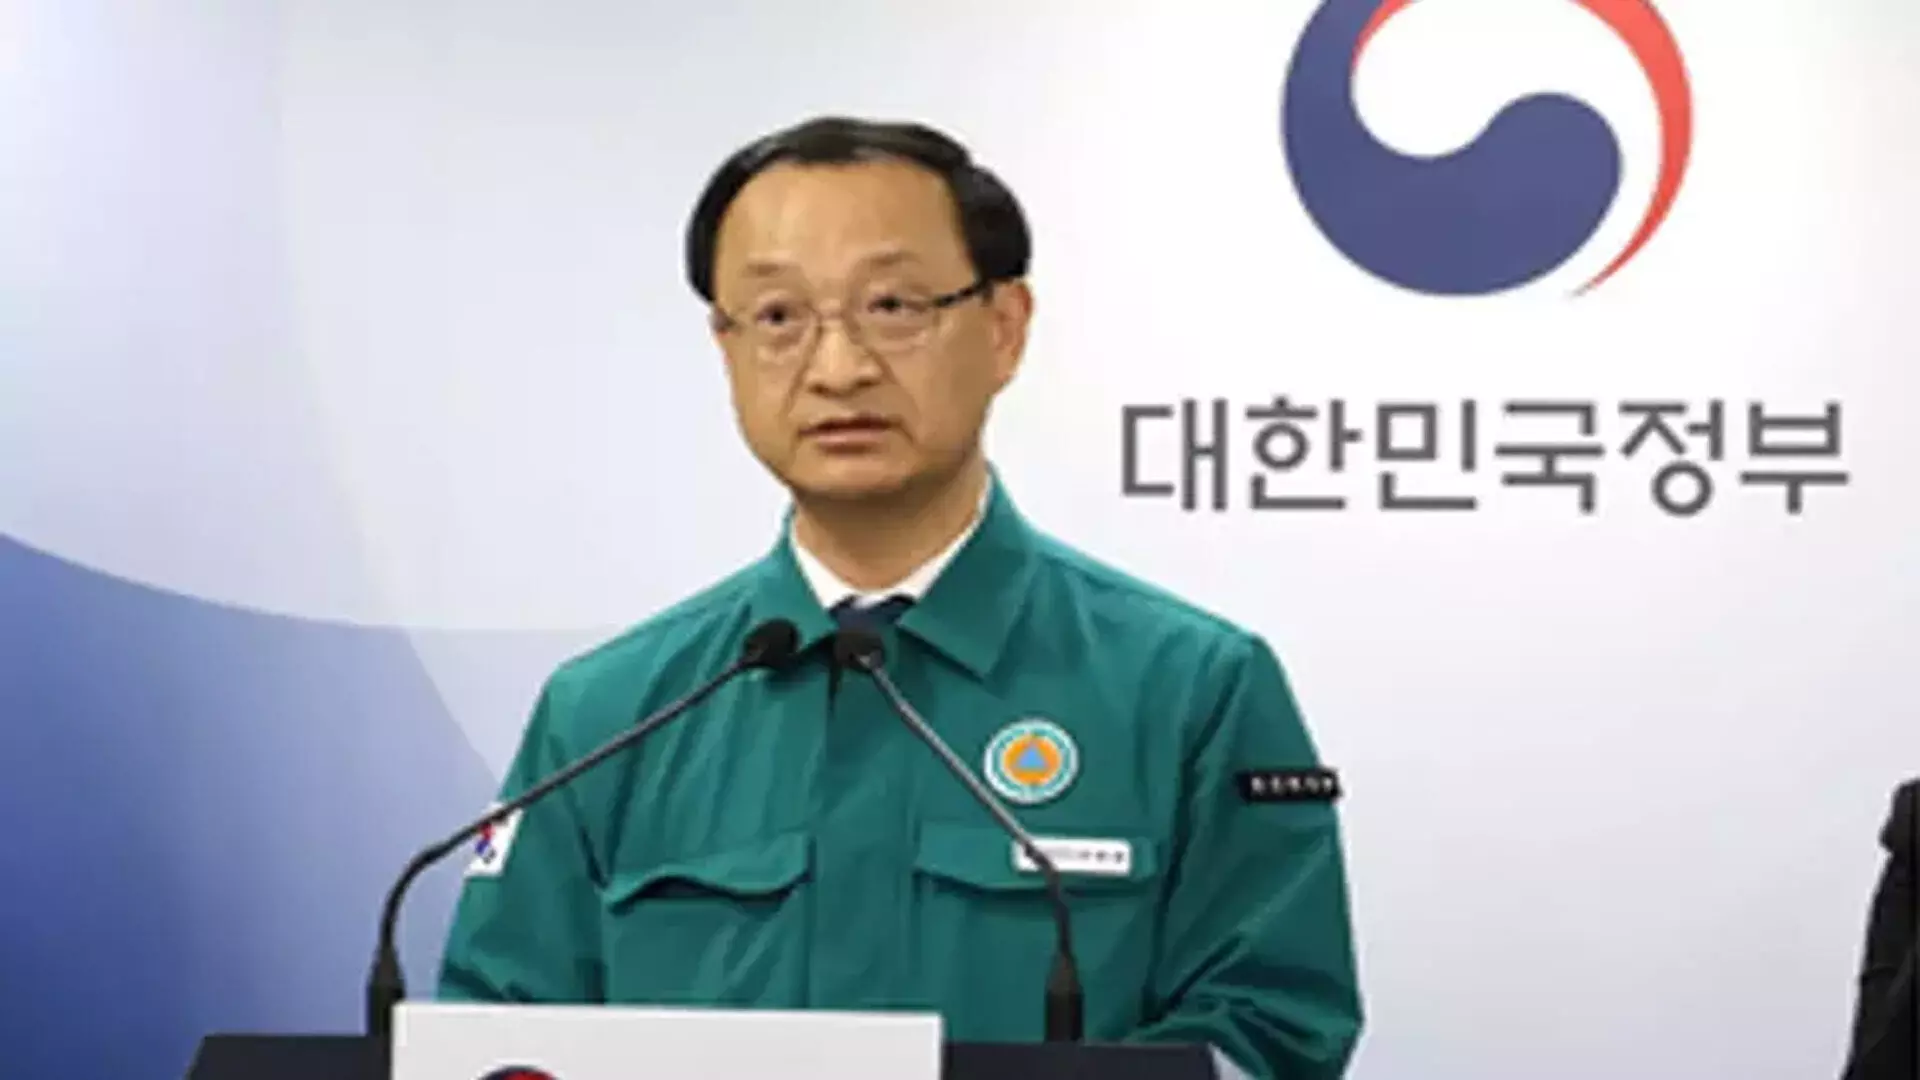 दक्षिण कोरियाई सरकार ने हड़ताली डॉक्टरों से उचित समाधान पेश करने का आह्वान किया